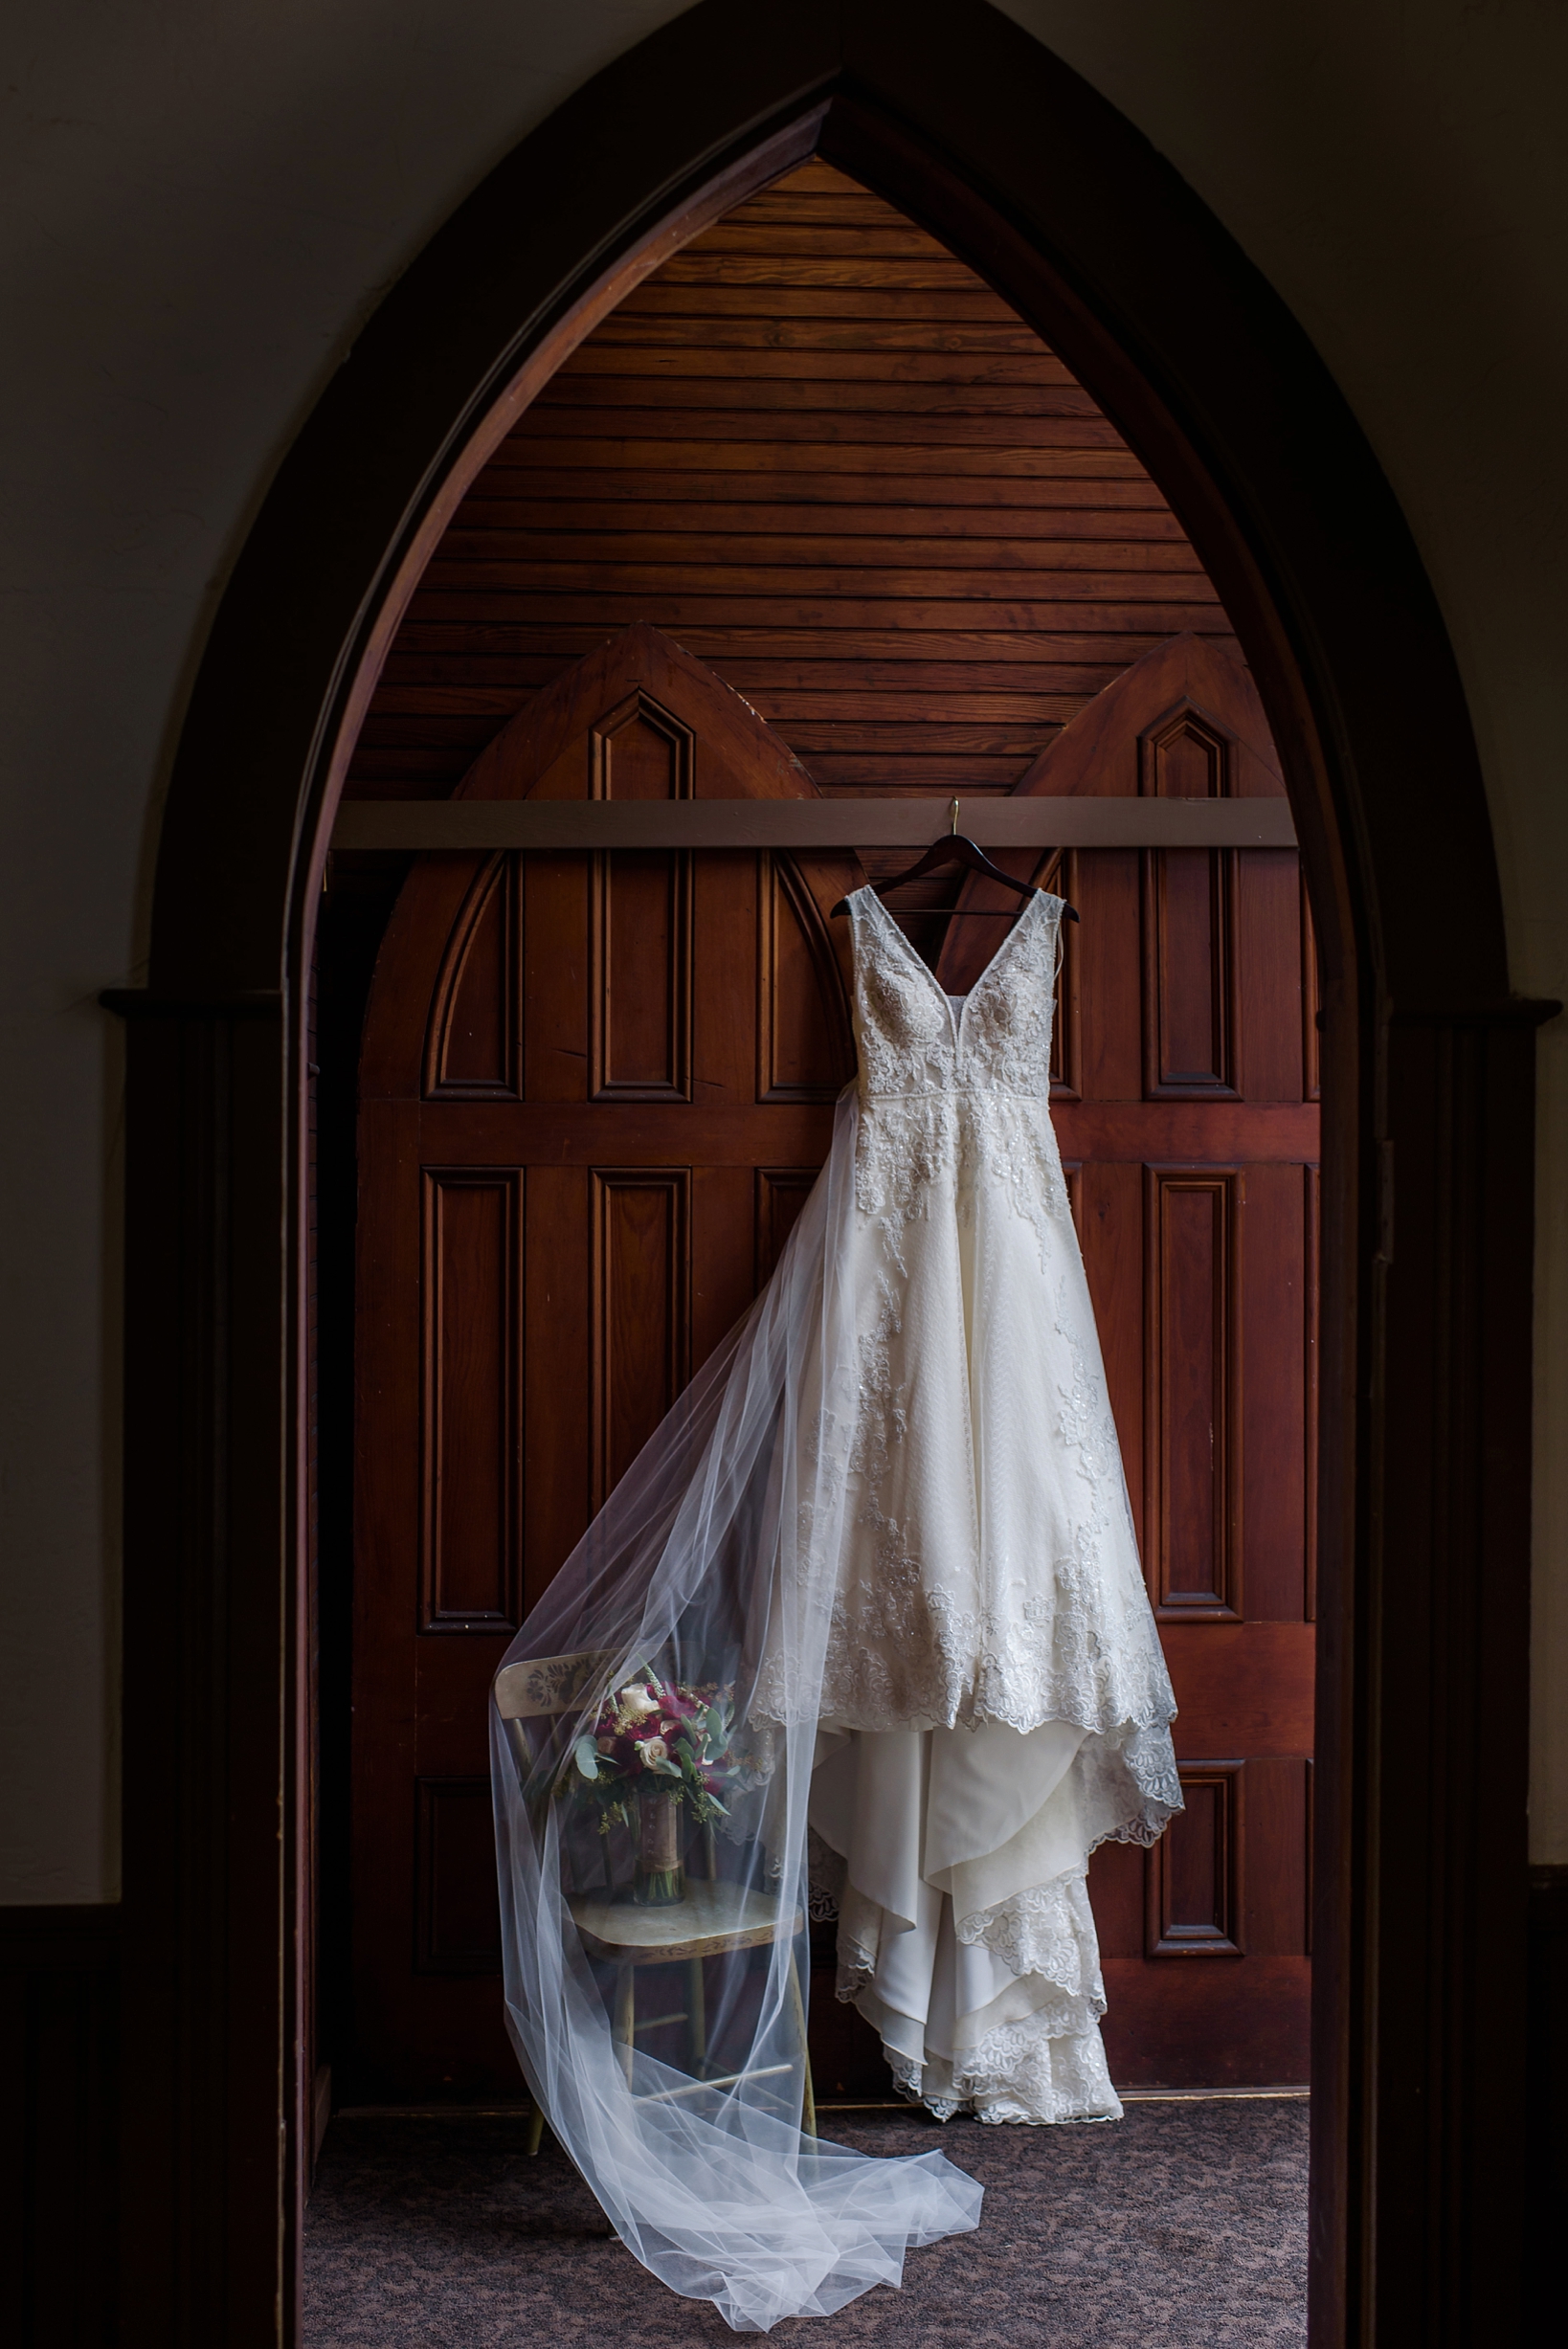 Bride's Wedding Dress hanging in Andrews Memorial Chapel in Dunedin, Florida by Sarah & ben Photography. by Sarah & Ben Photography. Check out all our work at www.sarahben.com